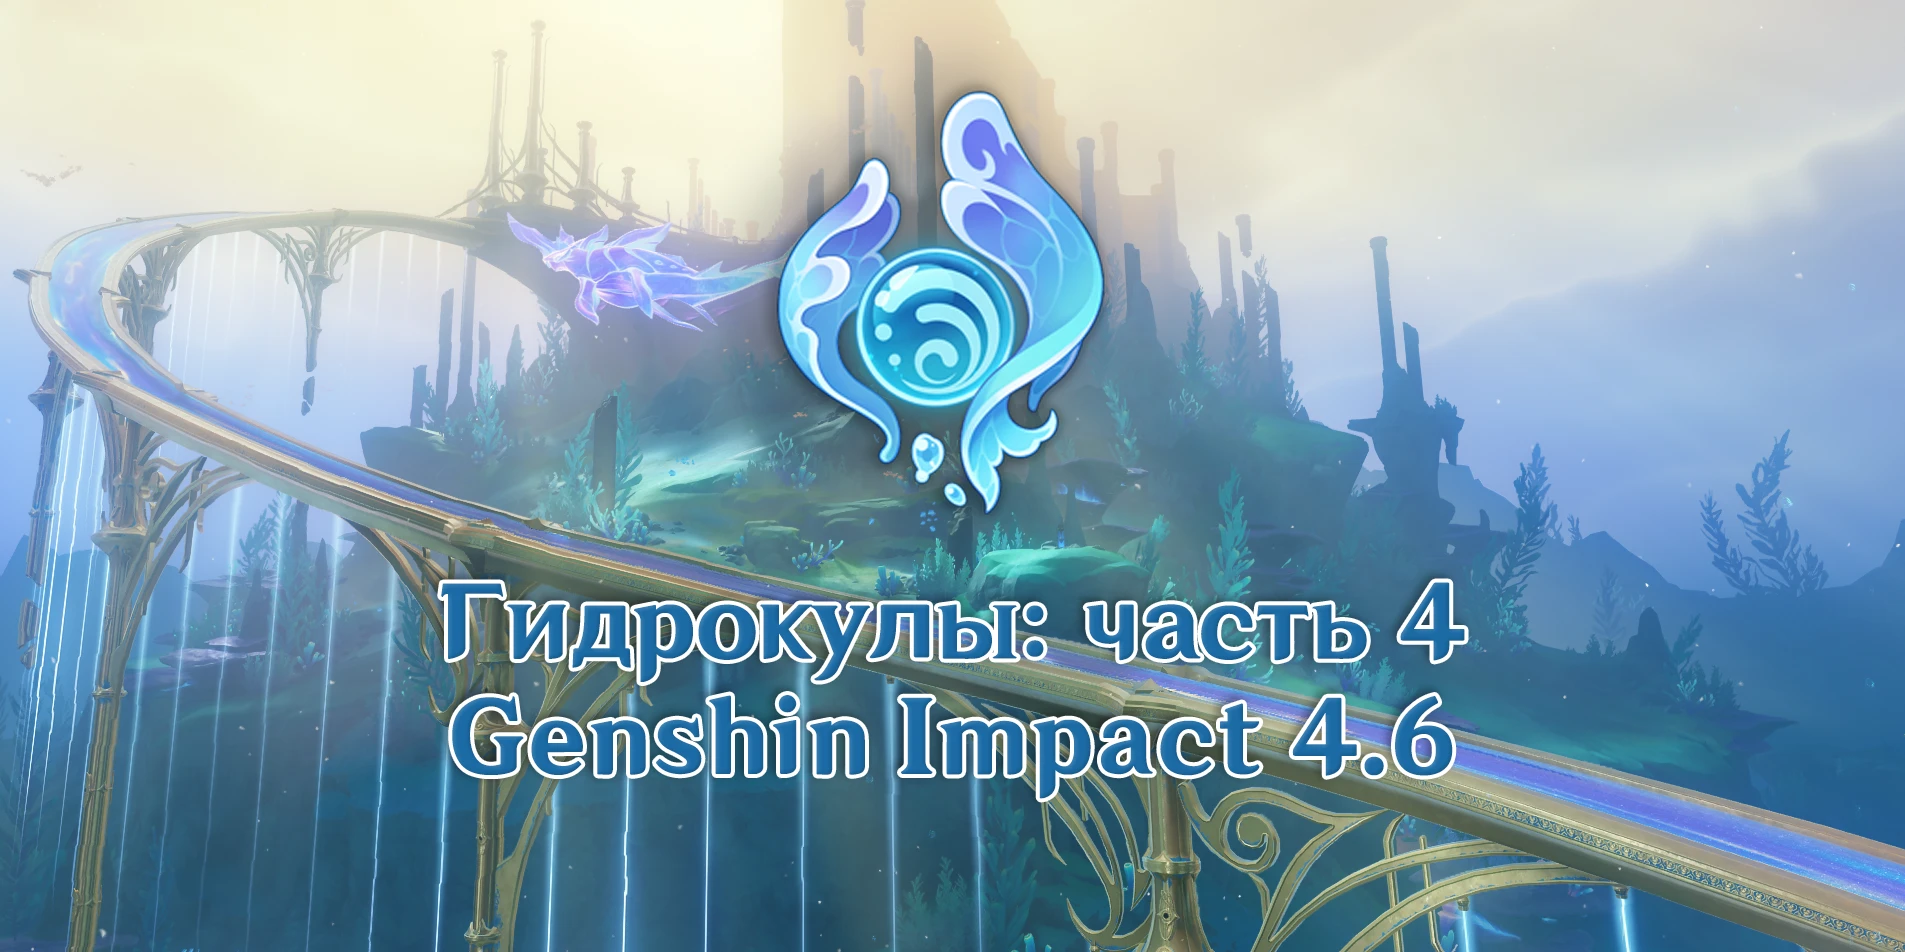 Гидрокулы Genshin Impact 4.6: подробности сбора (55 шт.) обложка